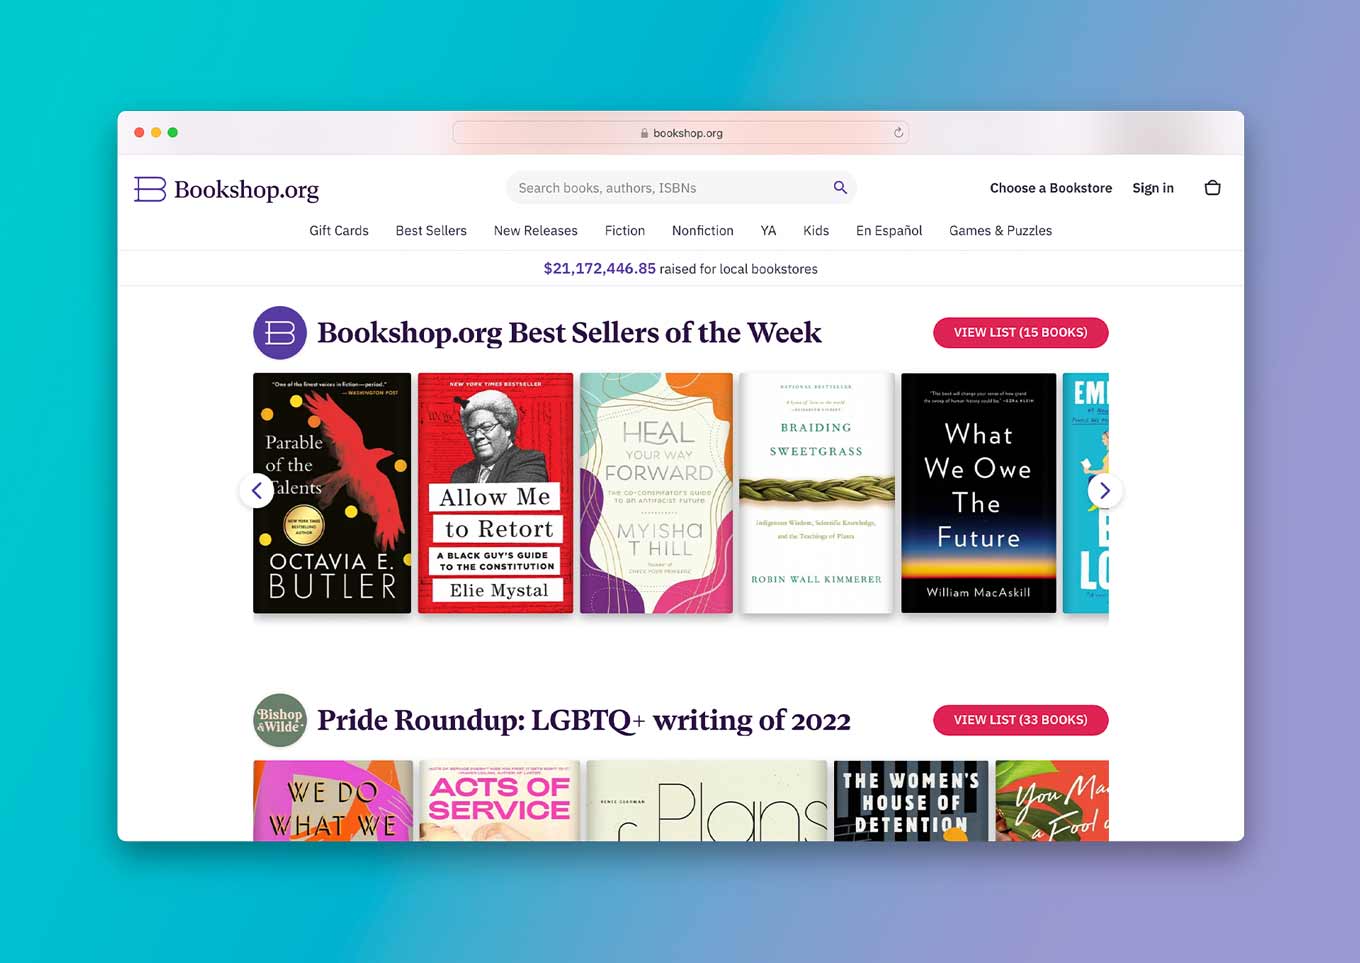 Bookshop.org Website: "Best Sellers of the Week" / "Pride Roundup LGBTQ+ Writing of 2022"